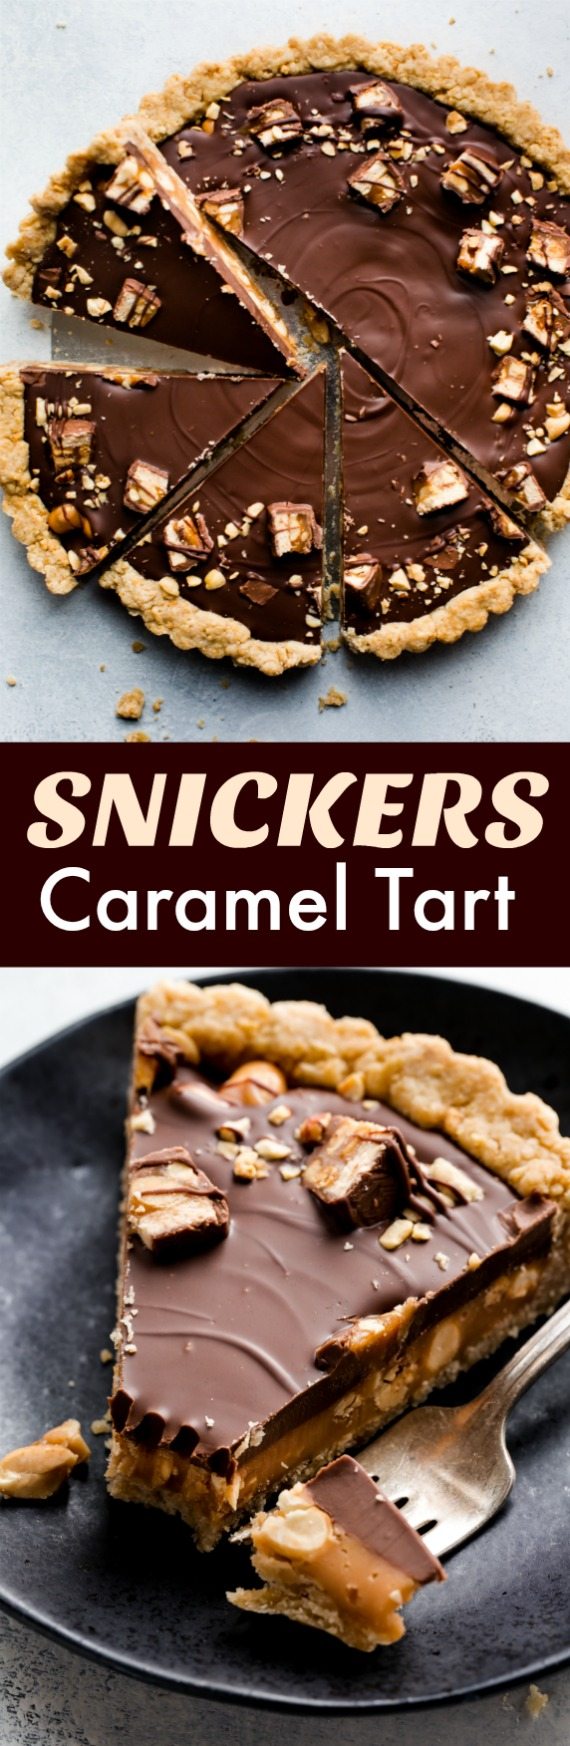 Recette de tarte au caramel Snickers avec beurre d'arachide, chocolat au lait, arachides et caramel salé pour un dessert sucré et salé! Recette sur sallysbakingaddiction.com